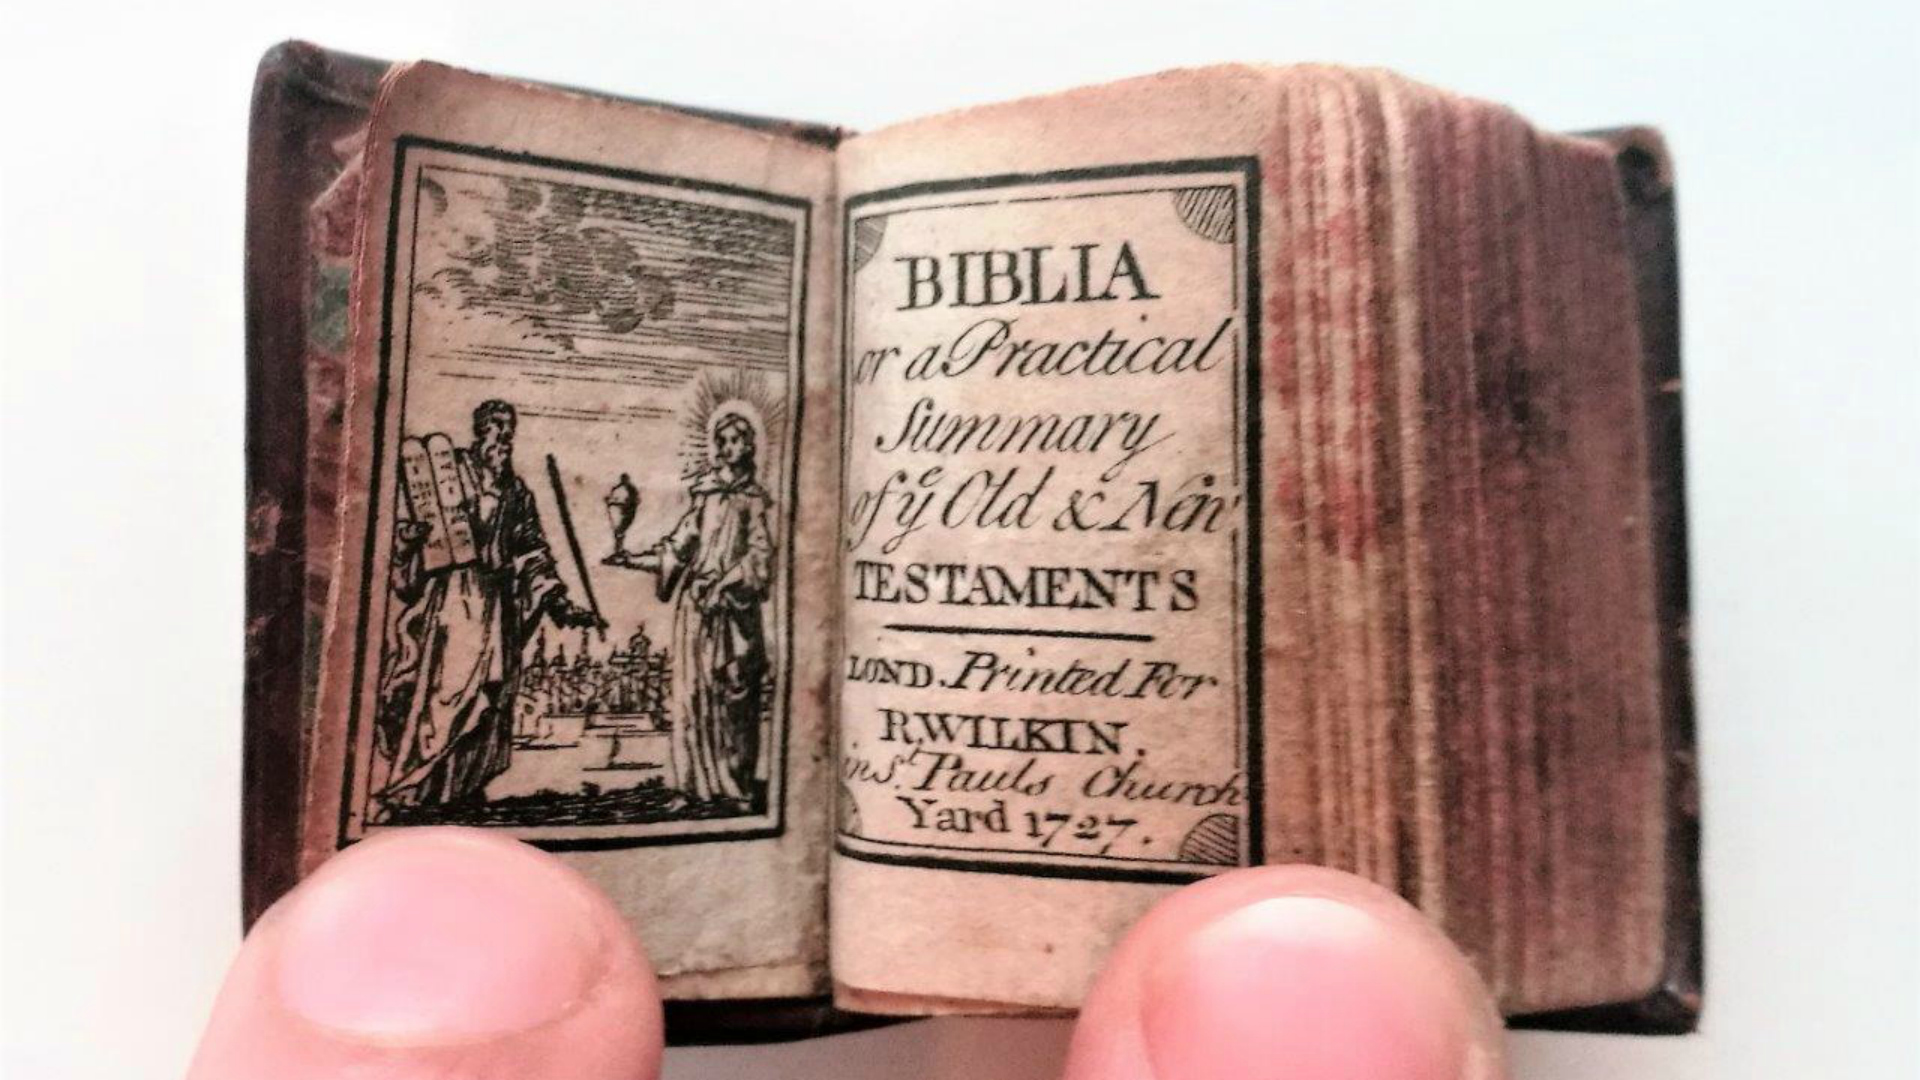 Sale a subasta la Biblia más pequeña del mundo